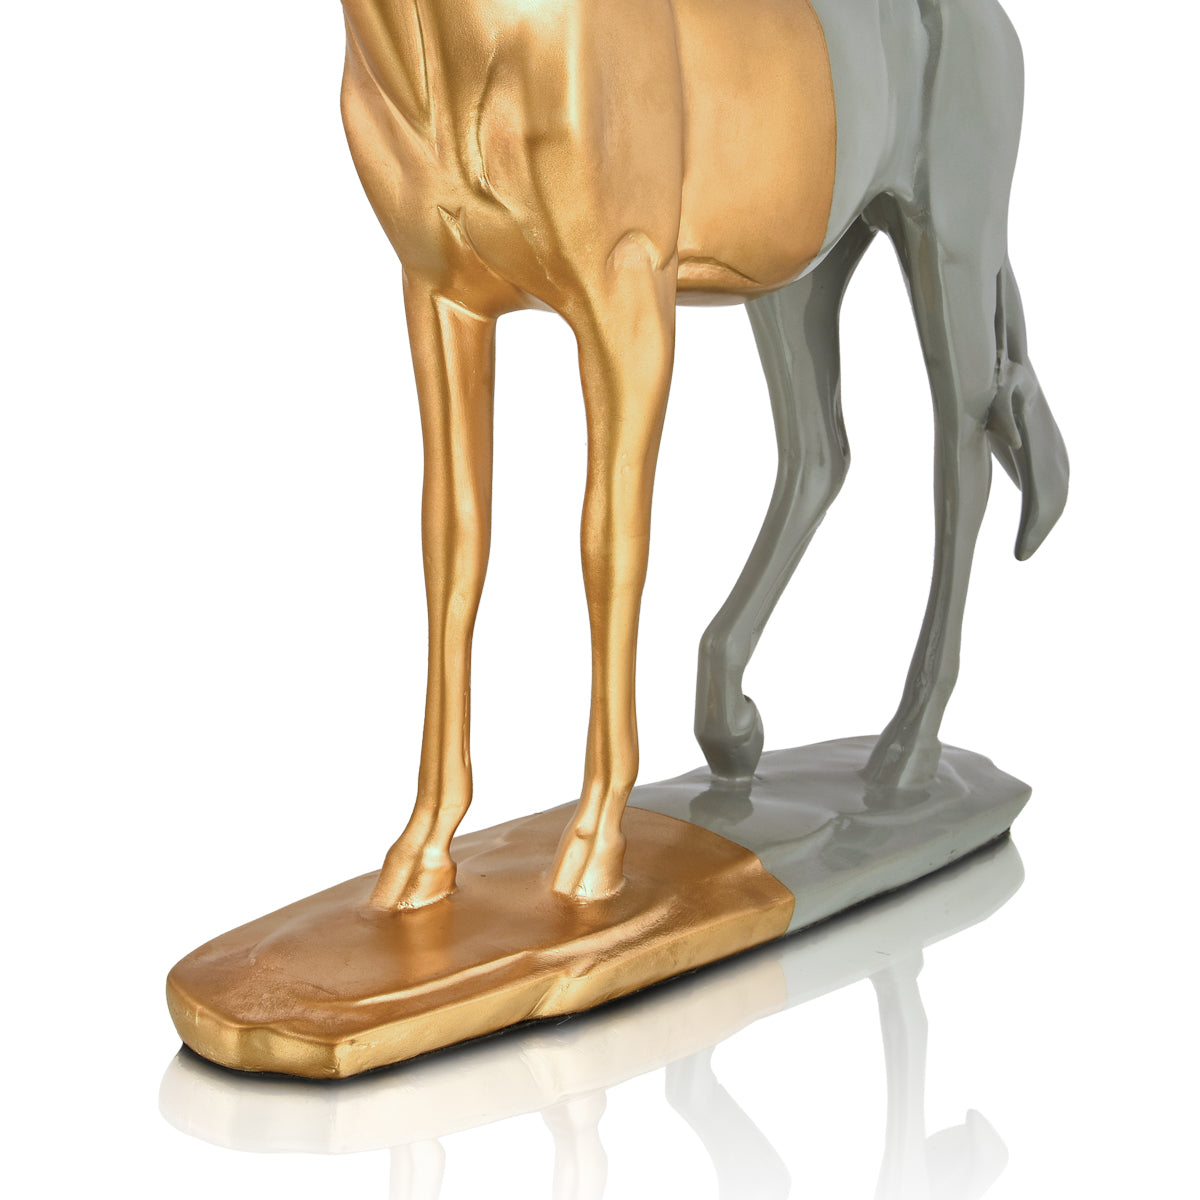 Cavallo Horse